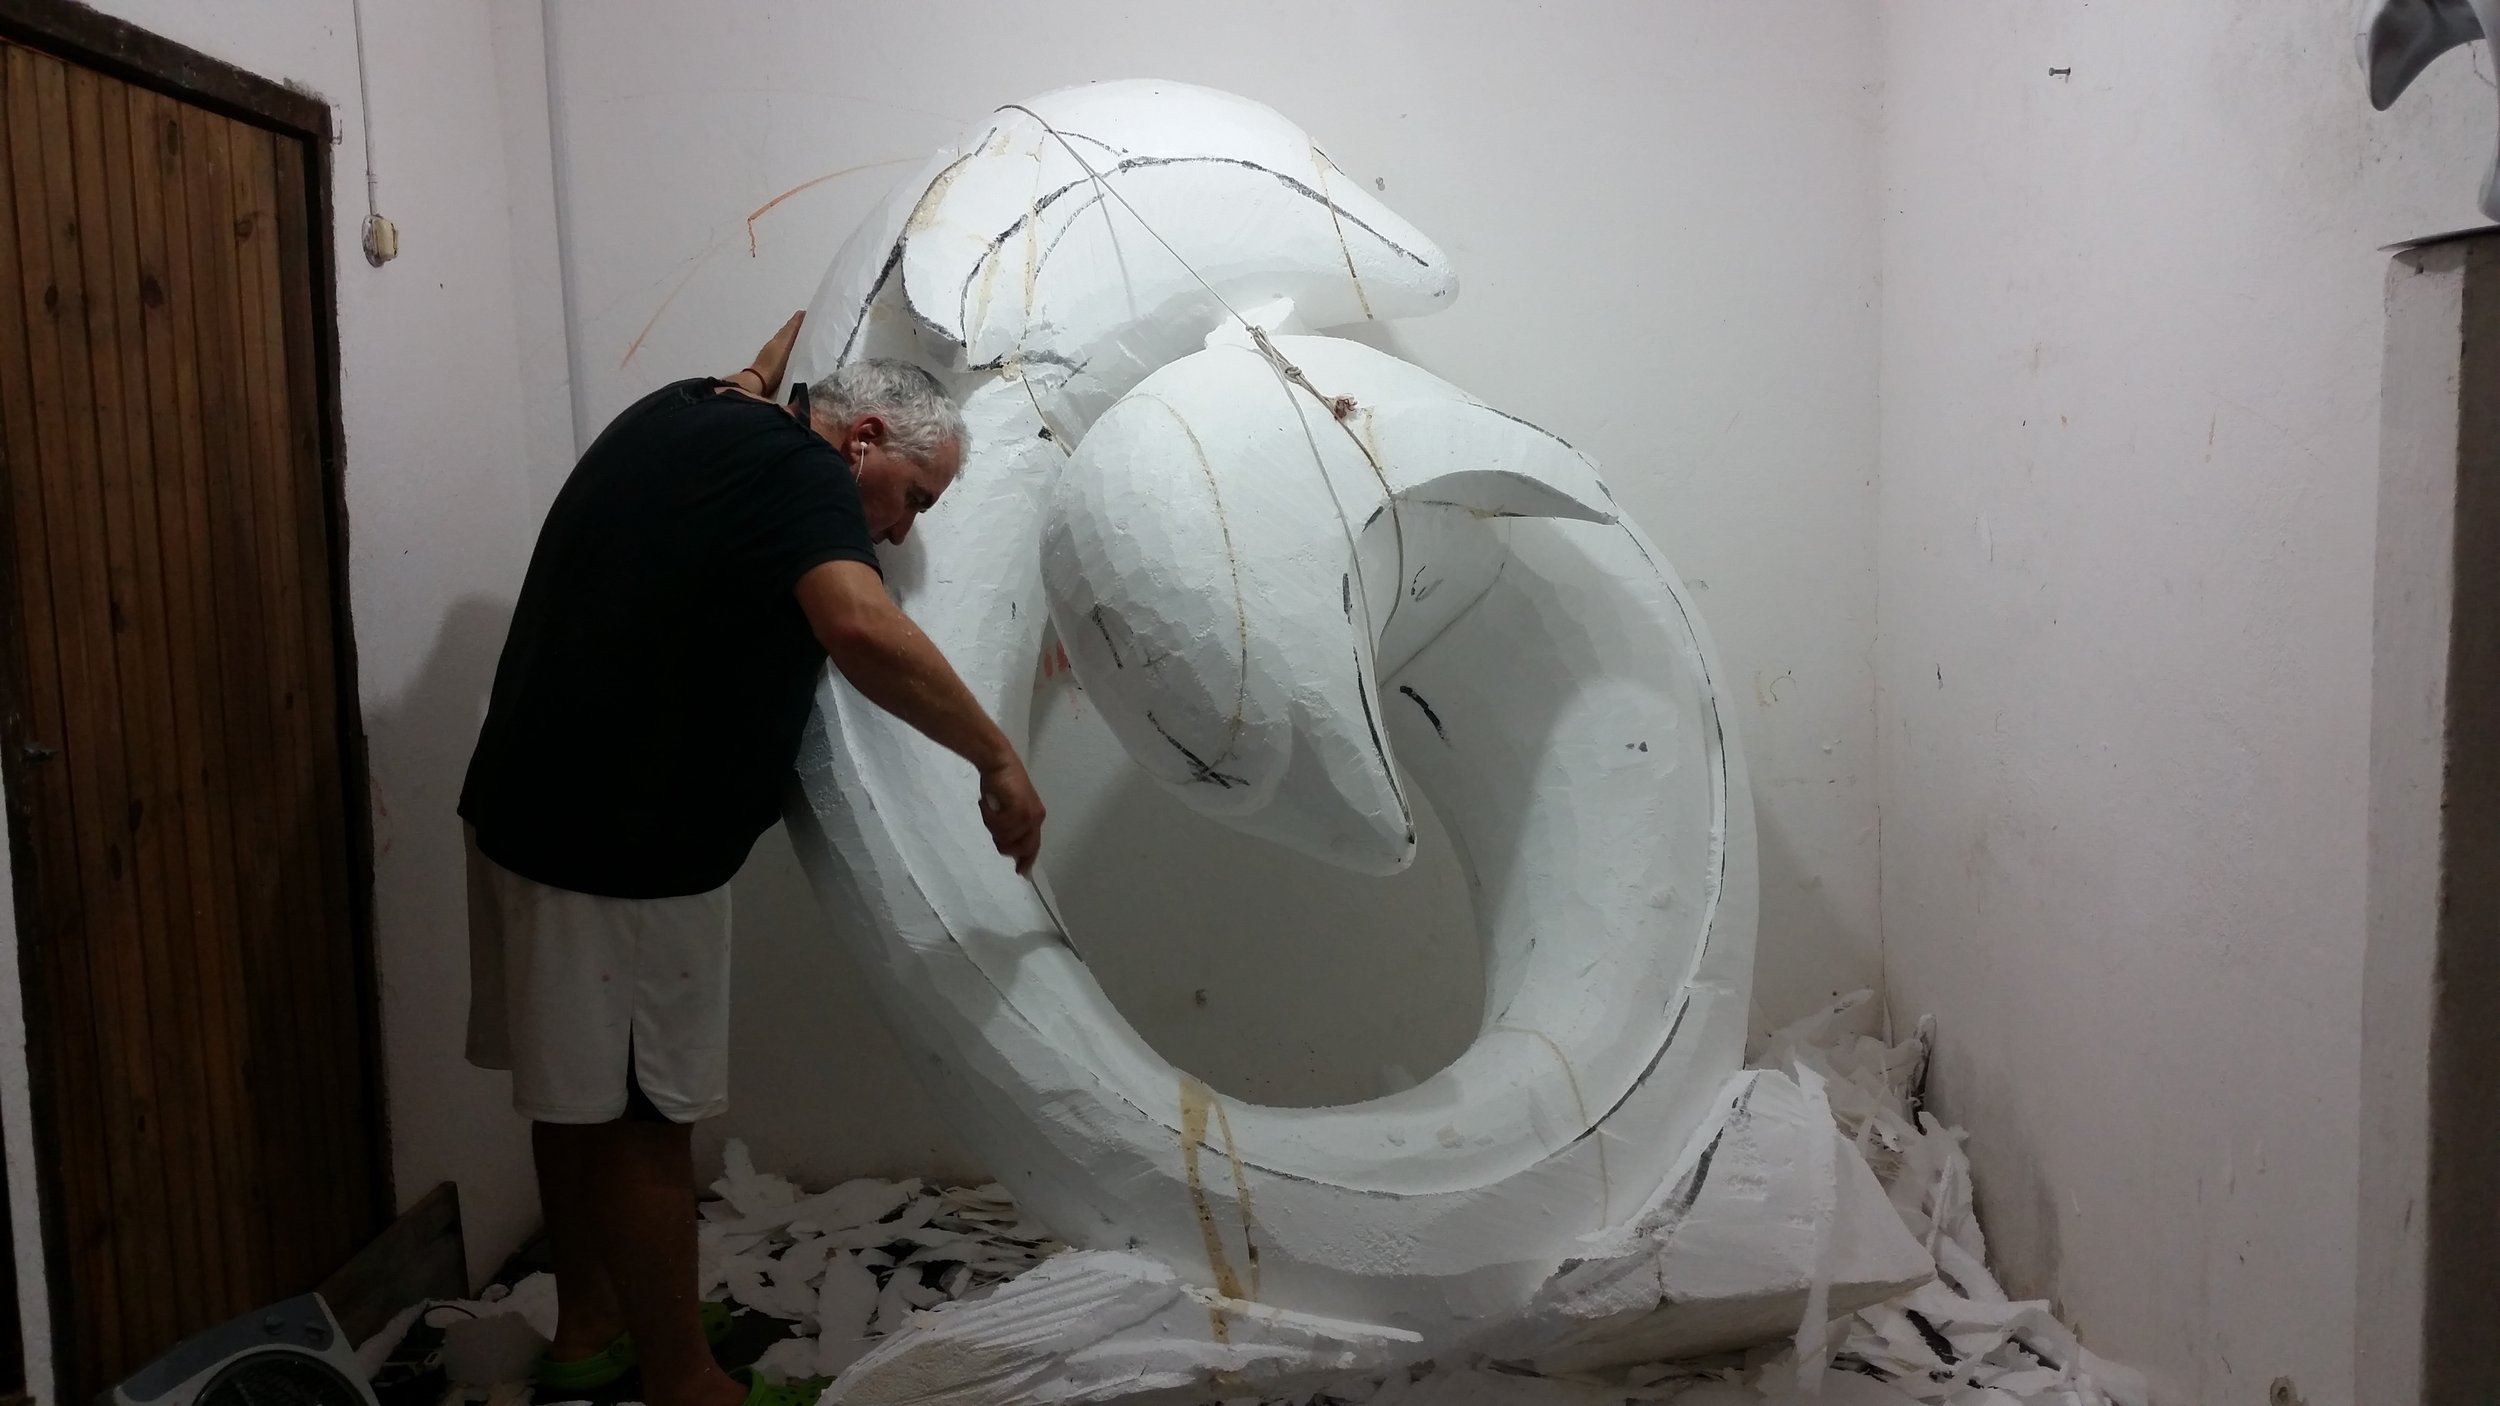 El escultor uruguayo Mauro Arbiza trabajando en sus esculturas Monumentales flotantes, aéreas, en sus esculturas minimalistas